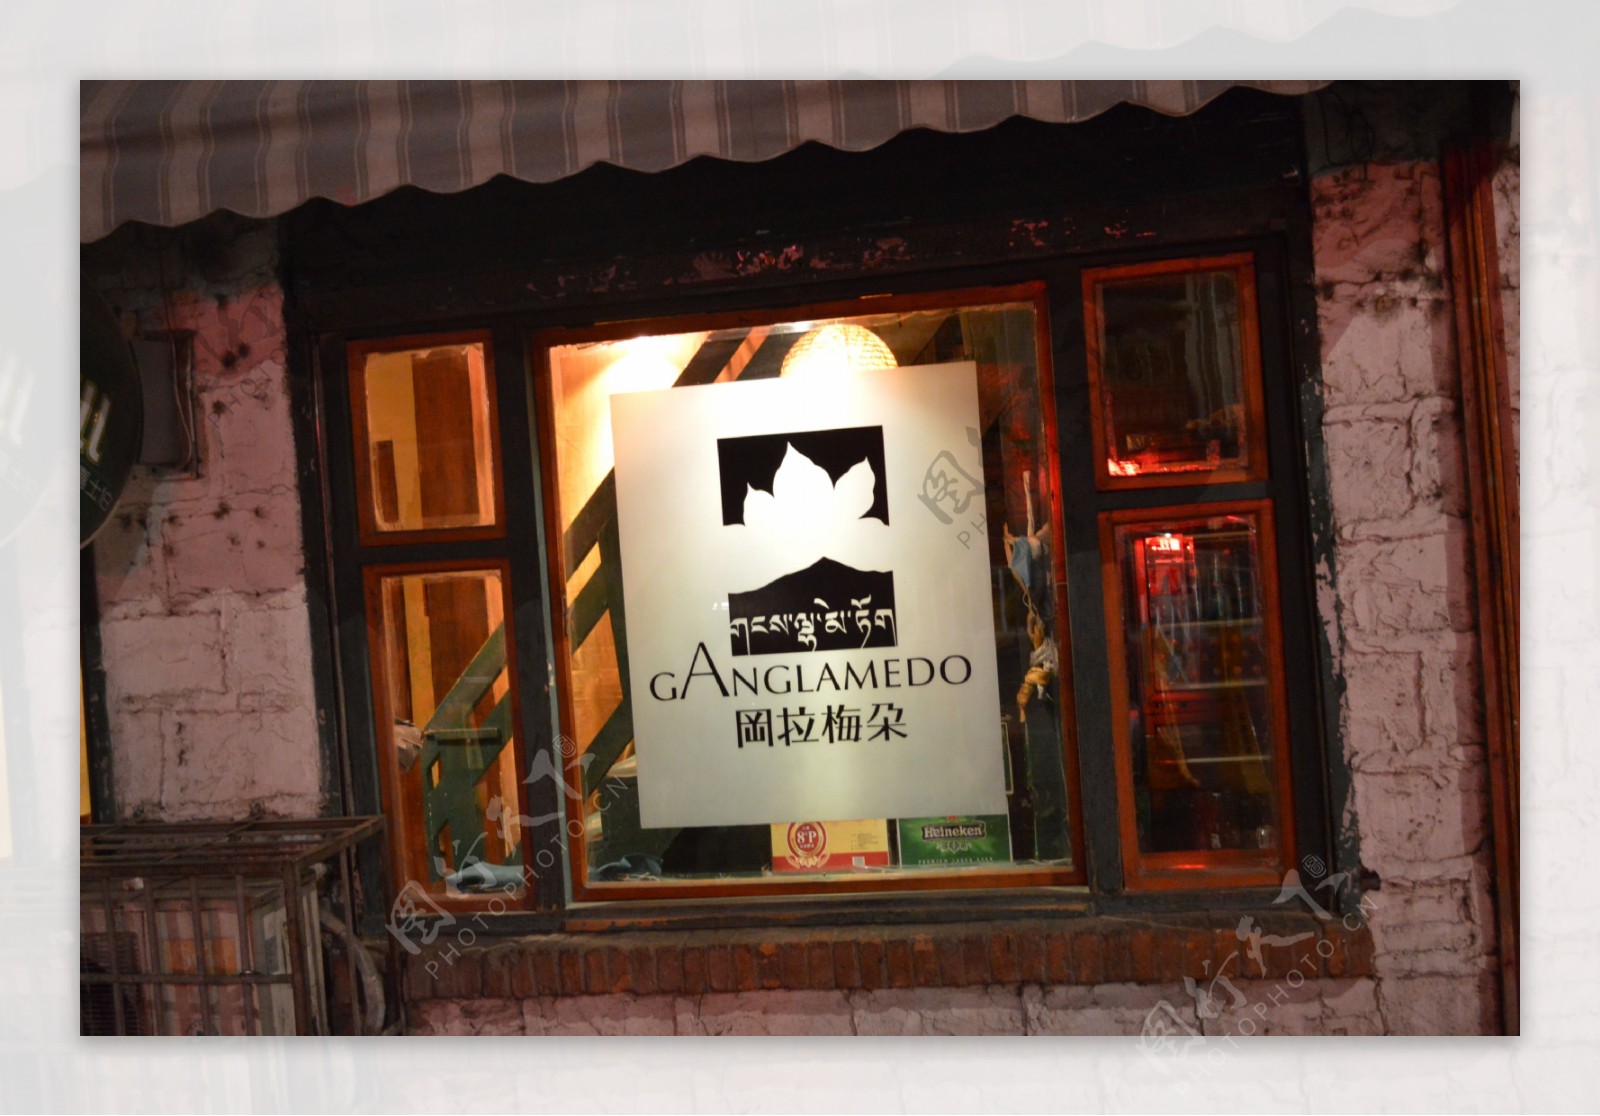 拉萨冈拉梅朵酒吧图片